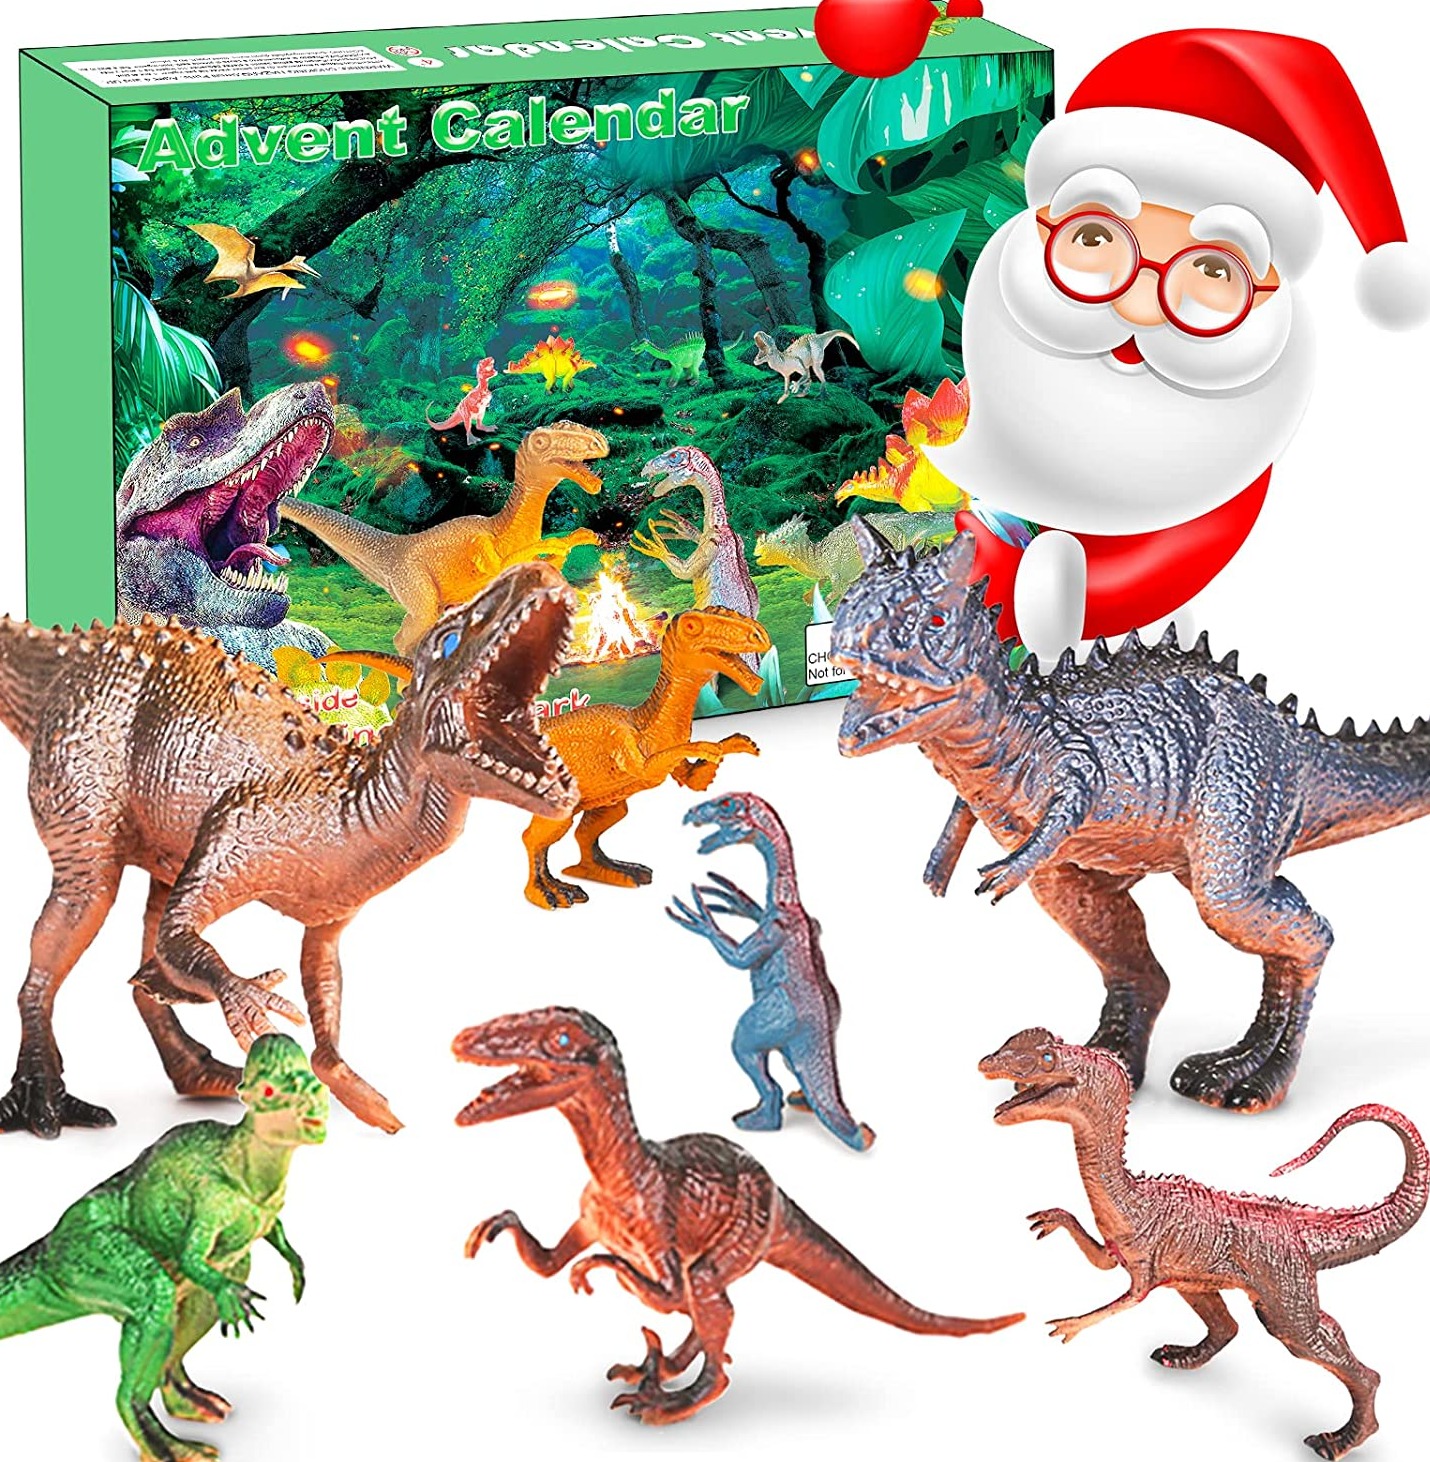 Adventskalender 2022 Weihnachten Realistische Dinosaurier Figur 24 Tage Xmas Countdown Kalender inkl. T-Rex Triceratops Velociraptor Überraschung Geschenkset für Jungen Mädchen Teens